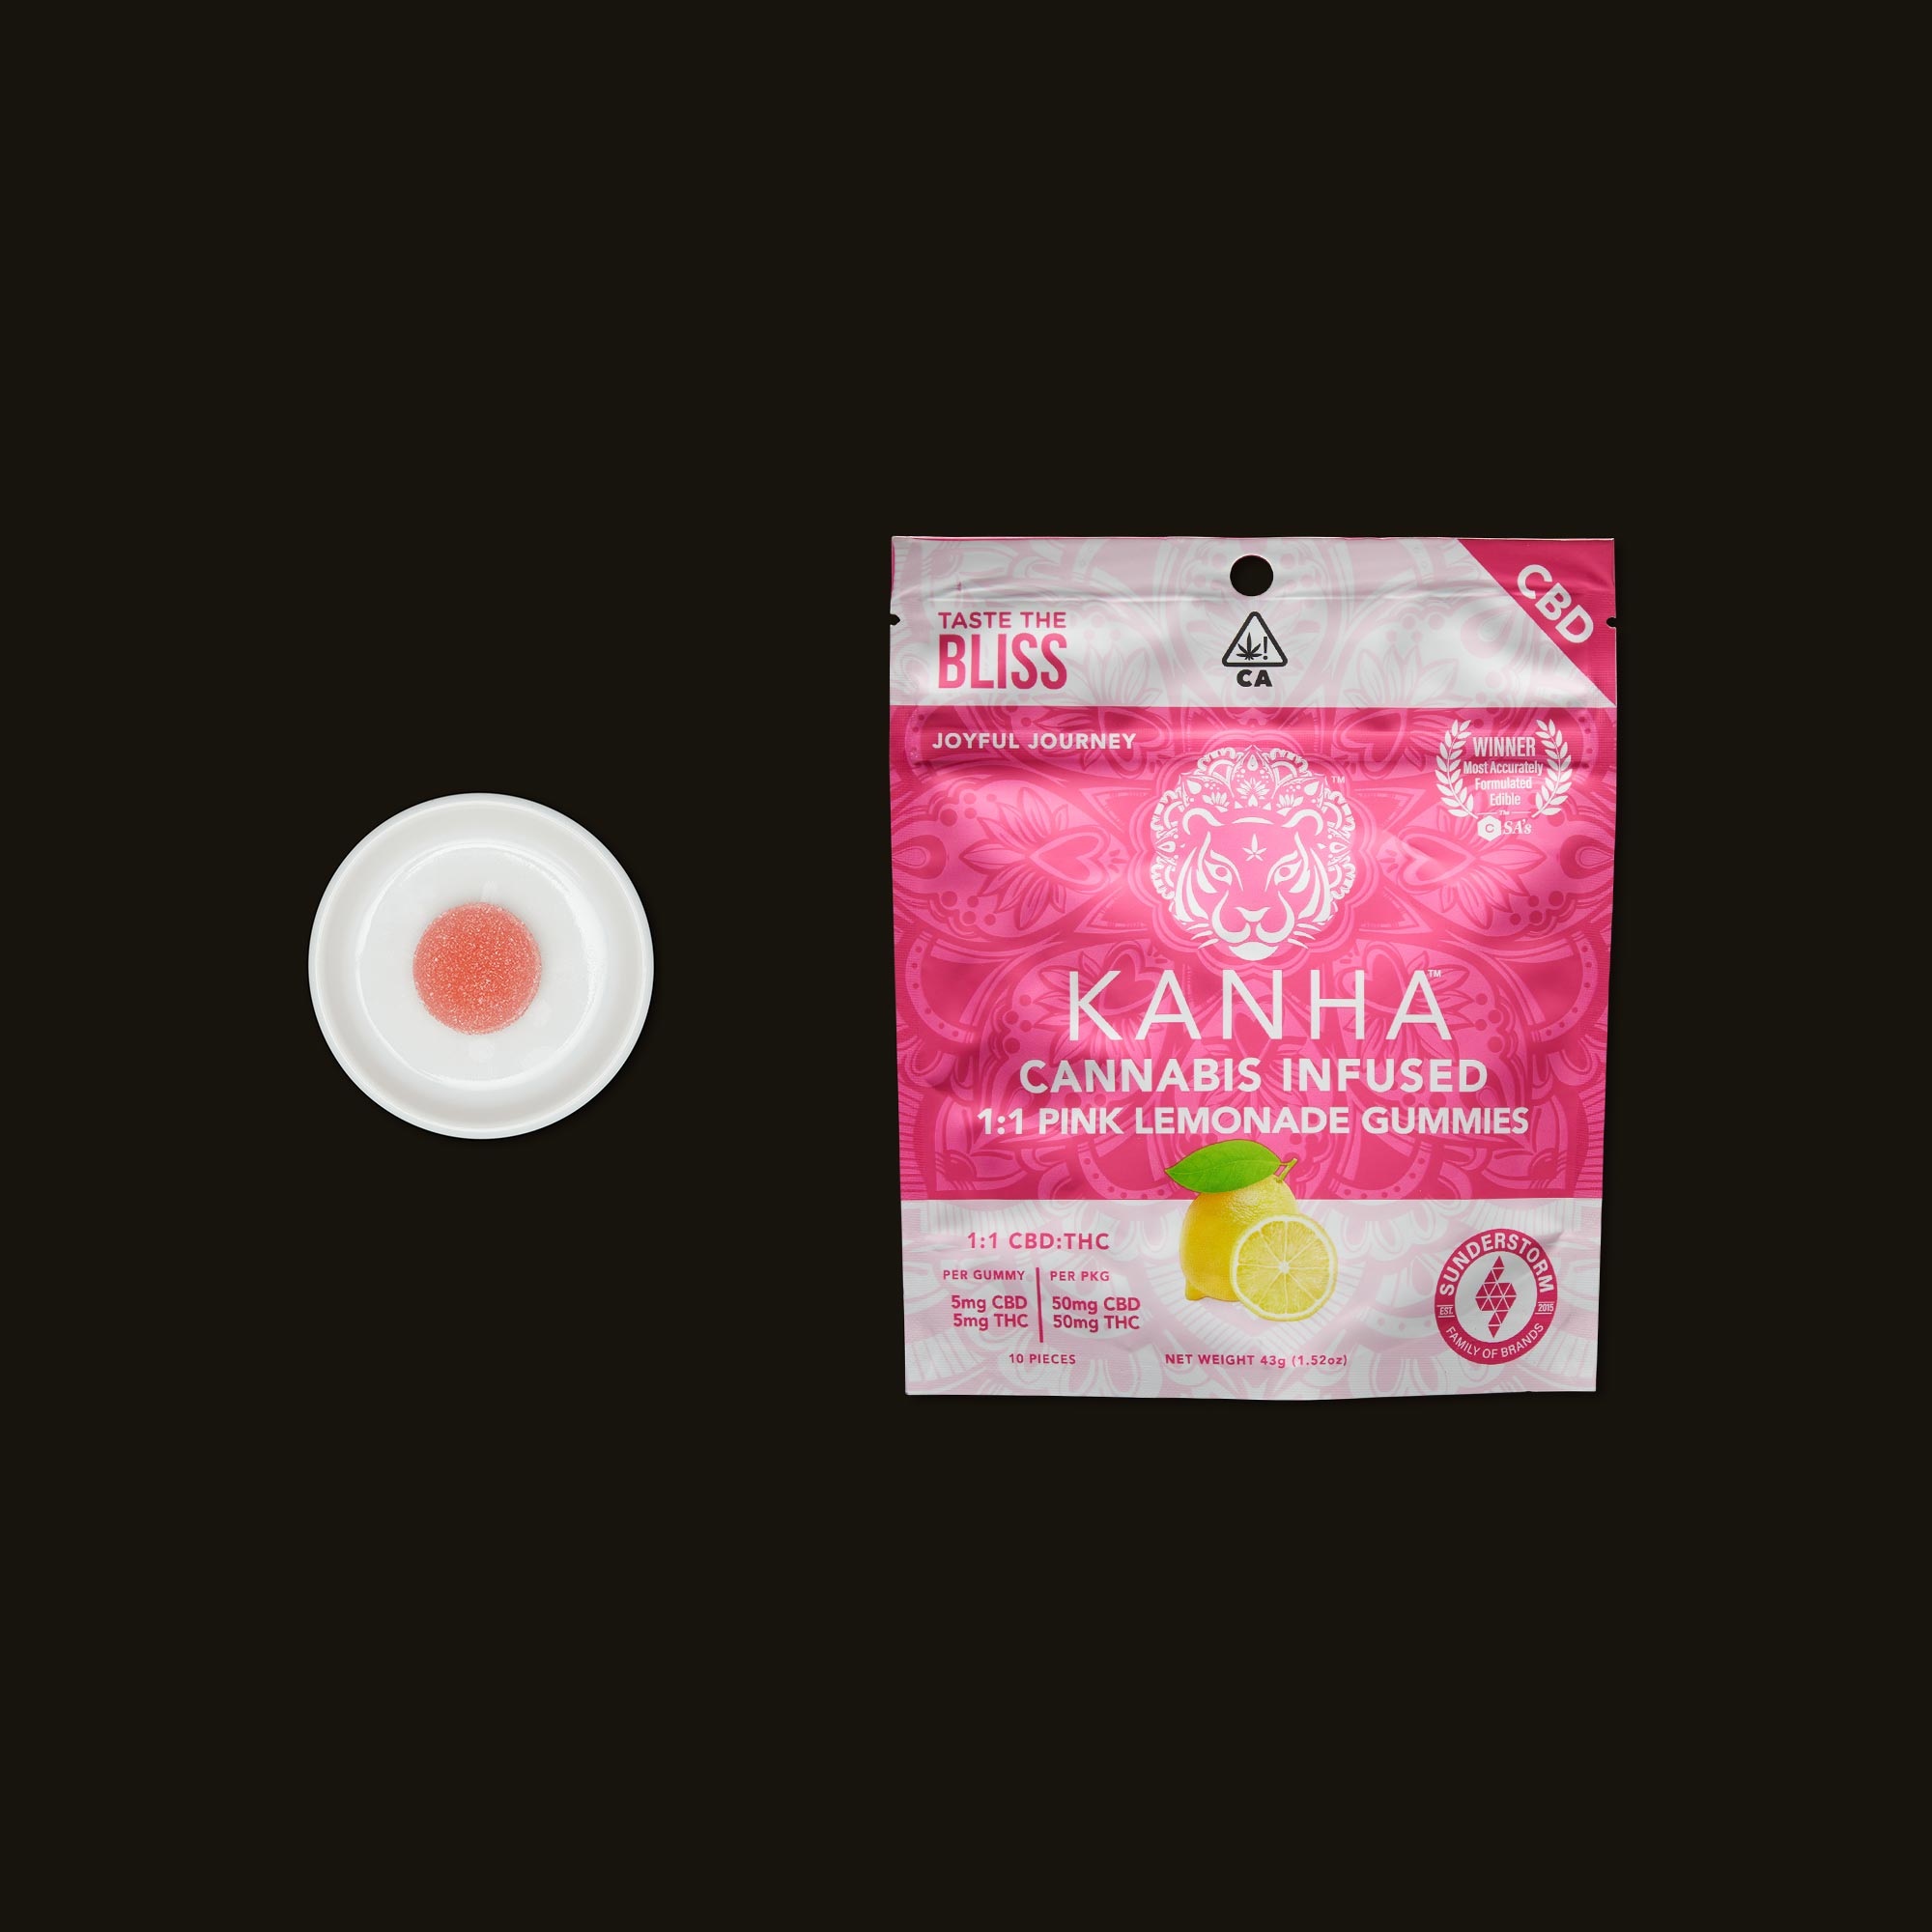 Kanha-1-1-Pink-Lemonade-Gummies-3-839981.jpg